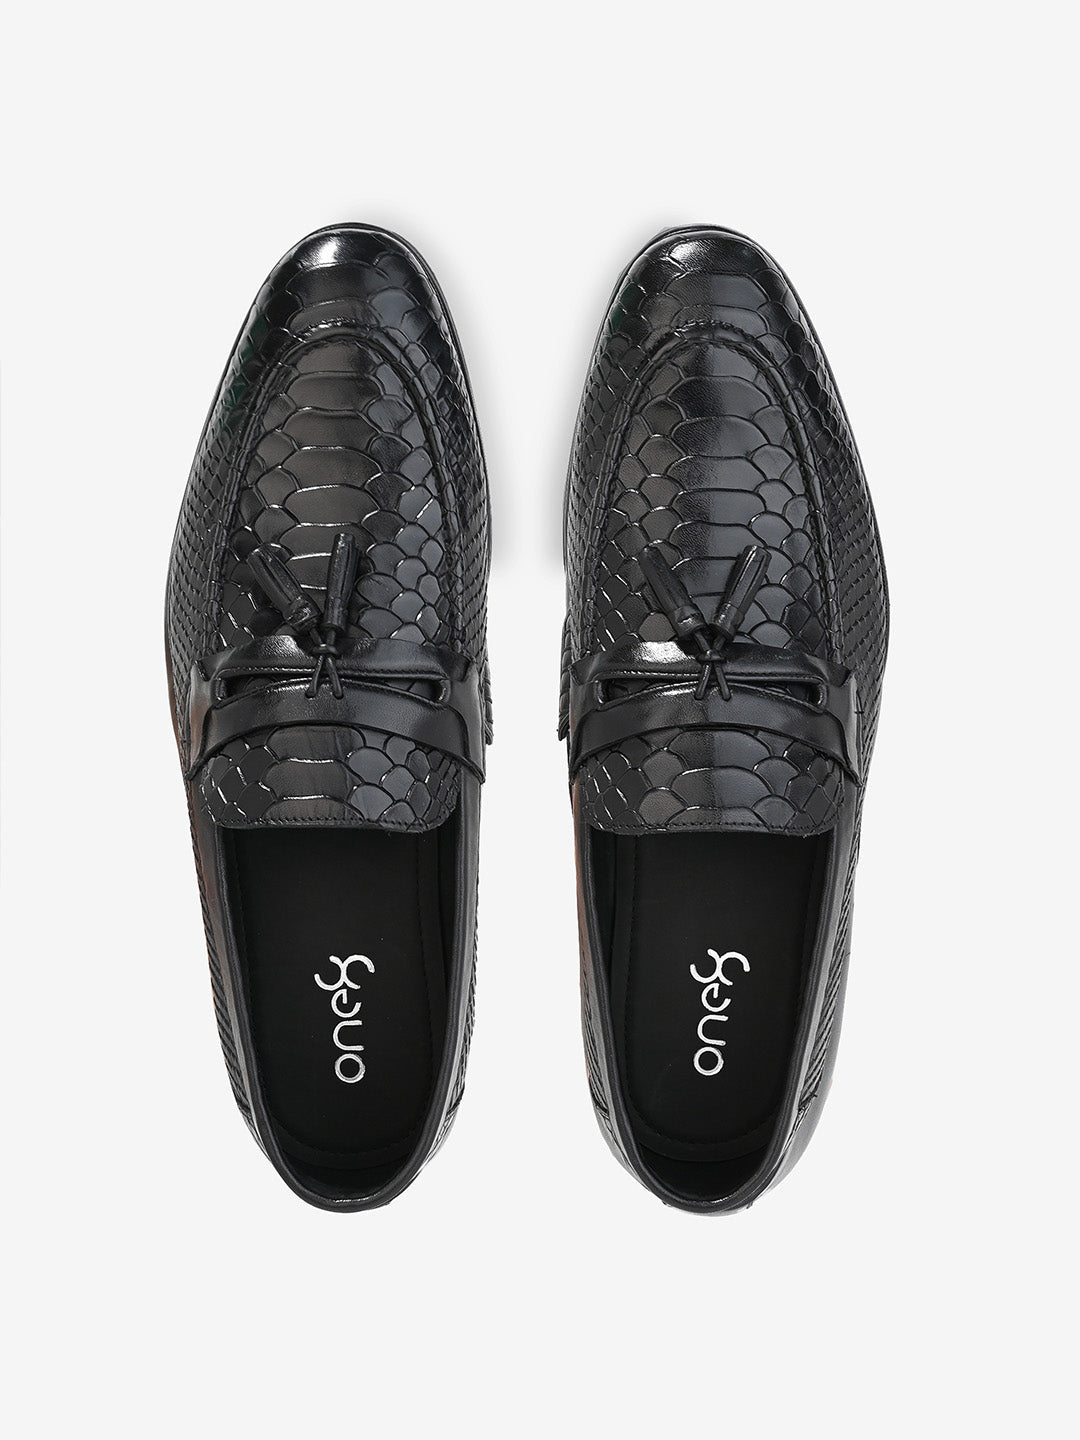 Classic Black Leather Men's Tassel Slip-On Shoes